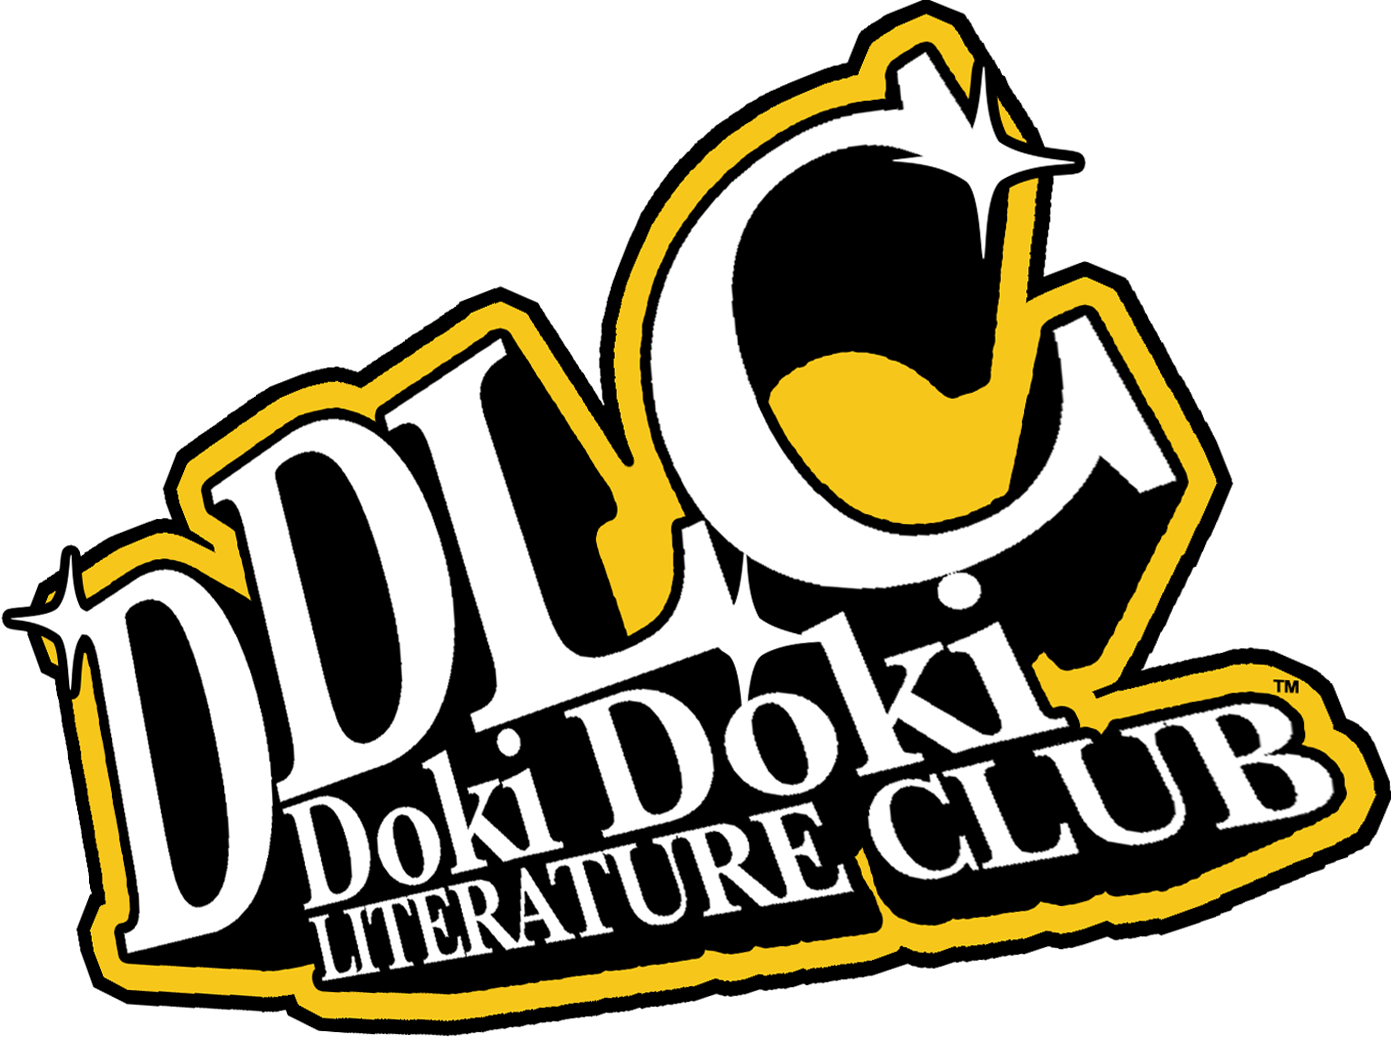 How to install doki doki literature club - rtsceo